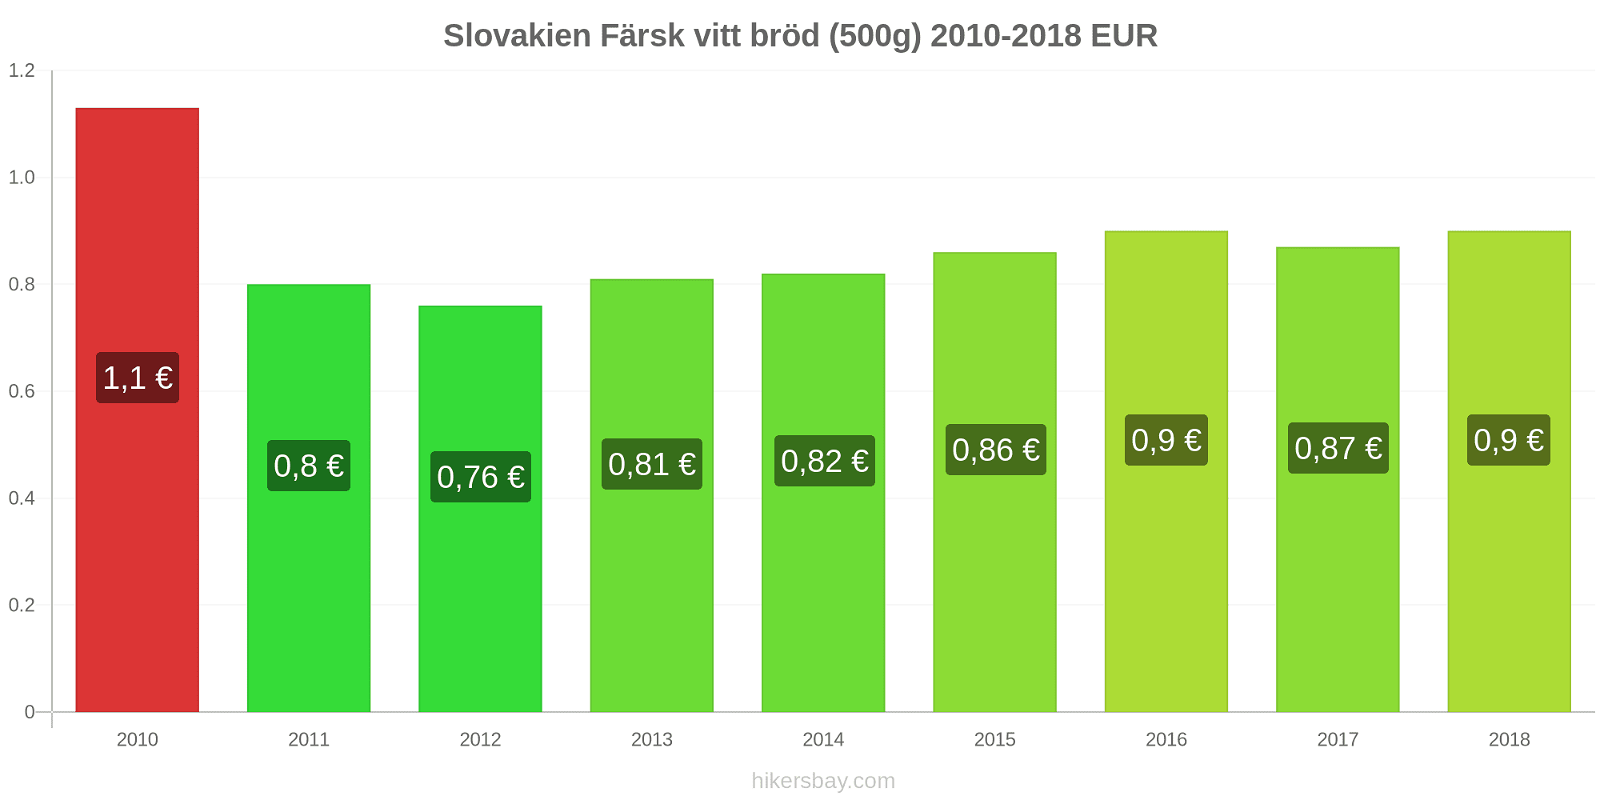 Slovakien prisändringar Färsk vitt bröd (500g) hikersbay.com